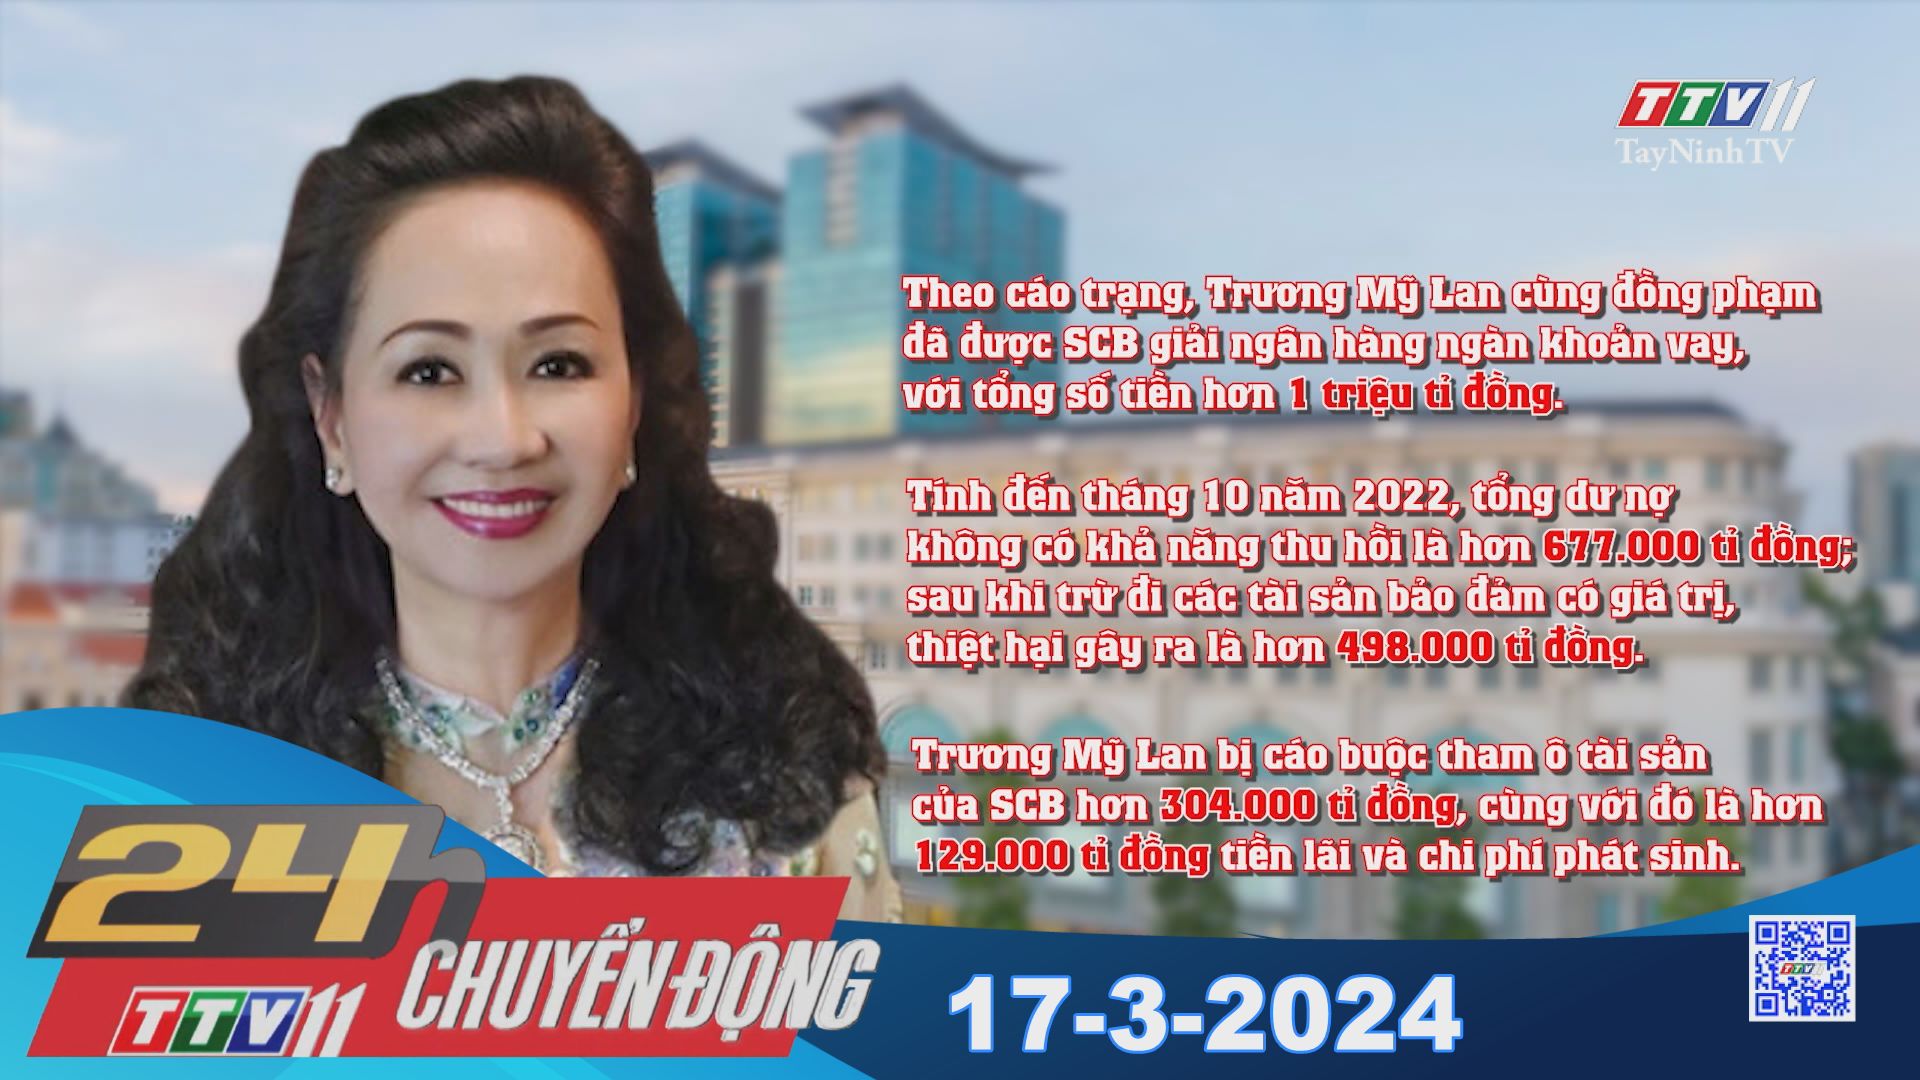 24h Chuyển động 17-3-2024 | Tin tức hôm nay | TayNinhTV